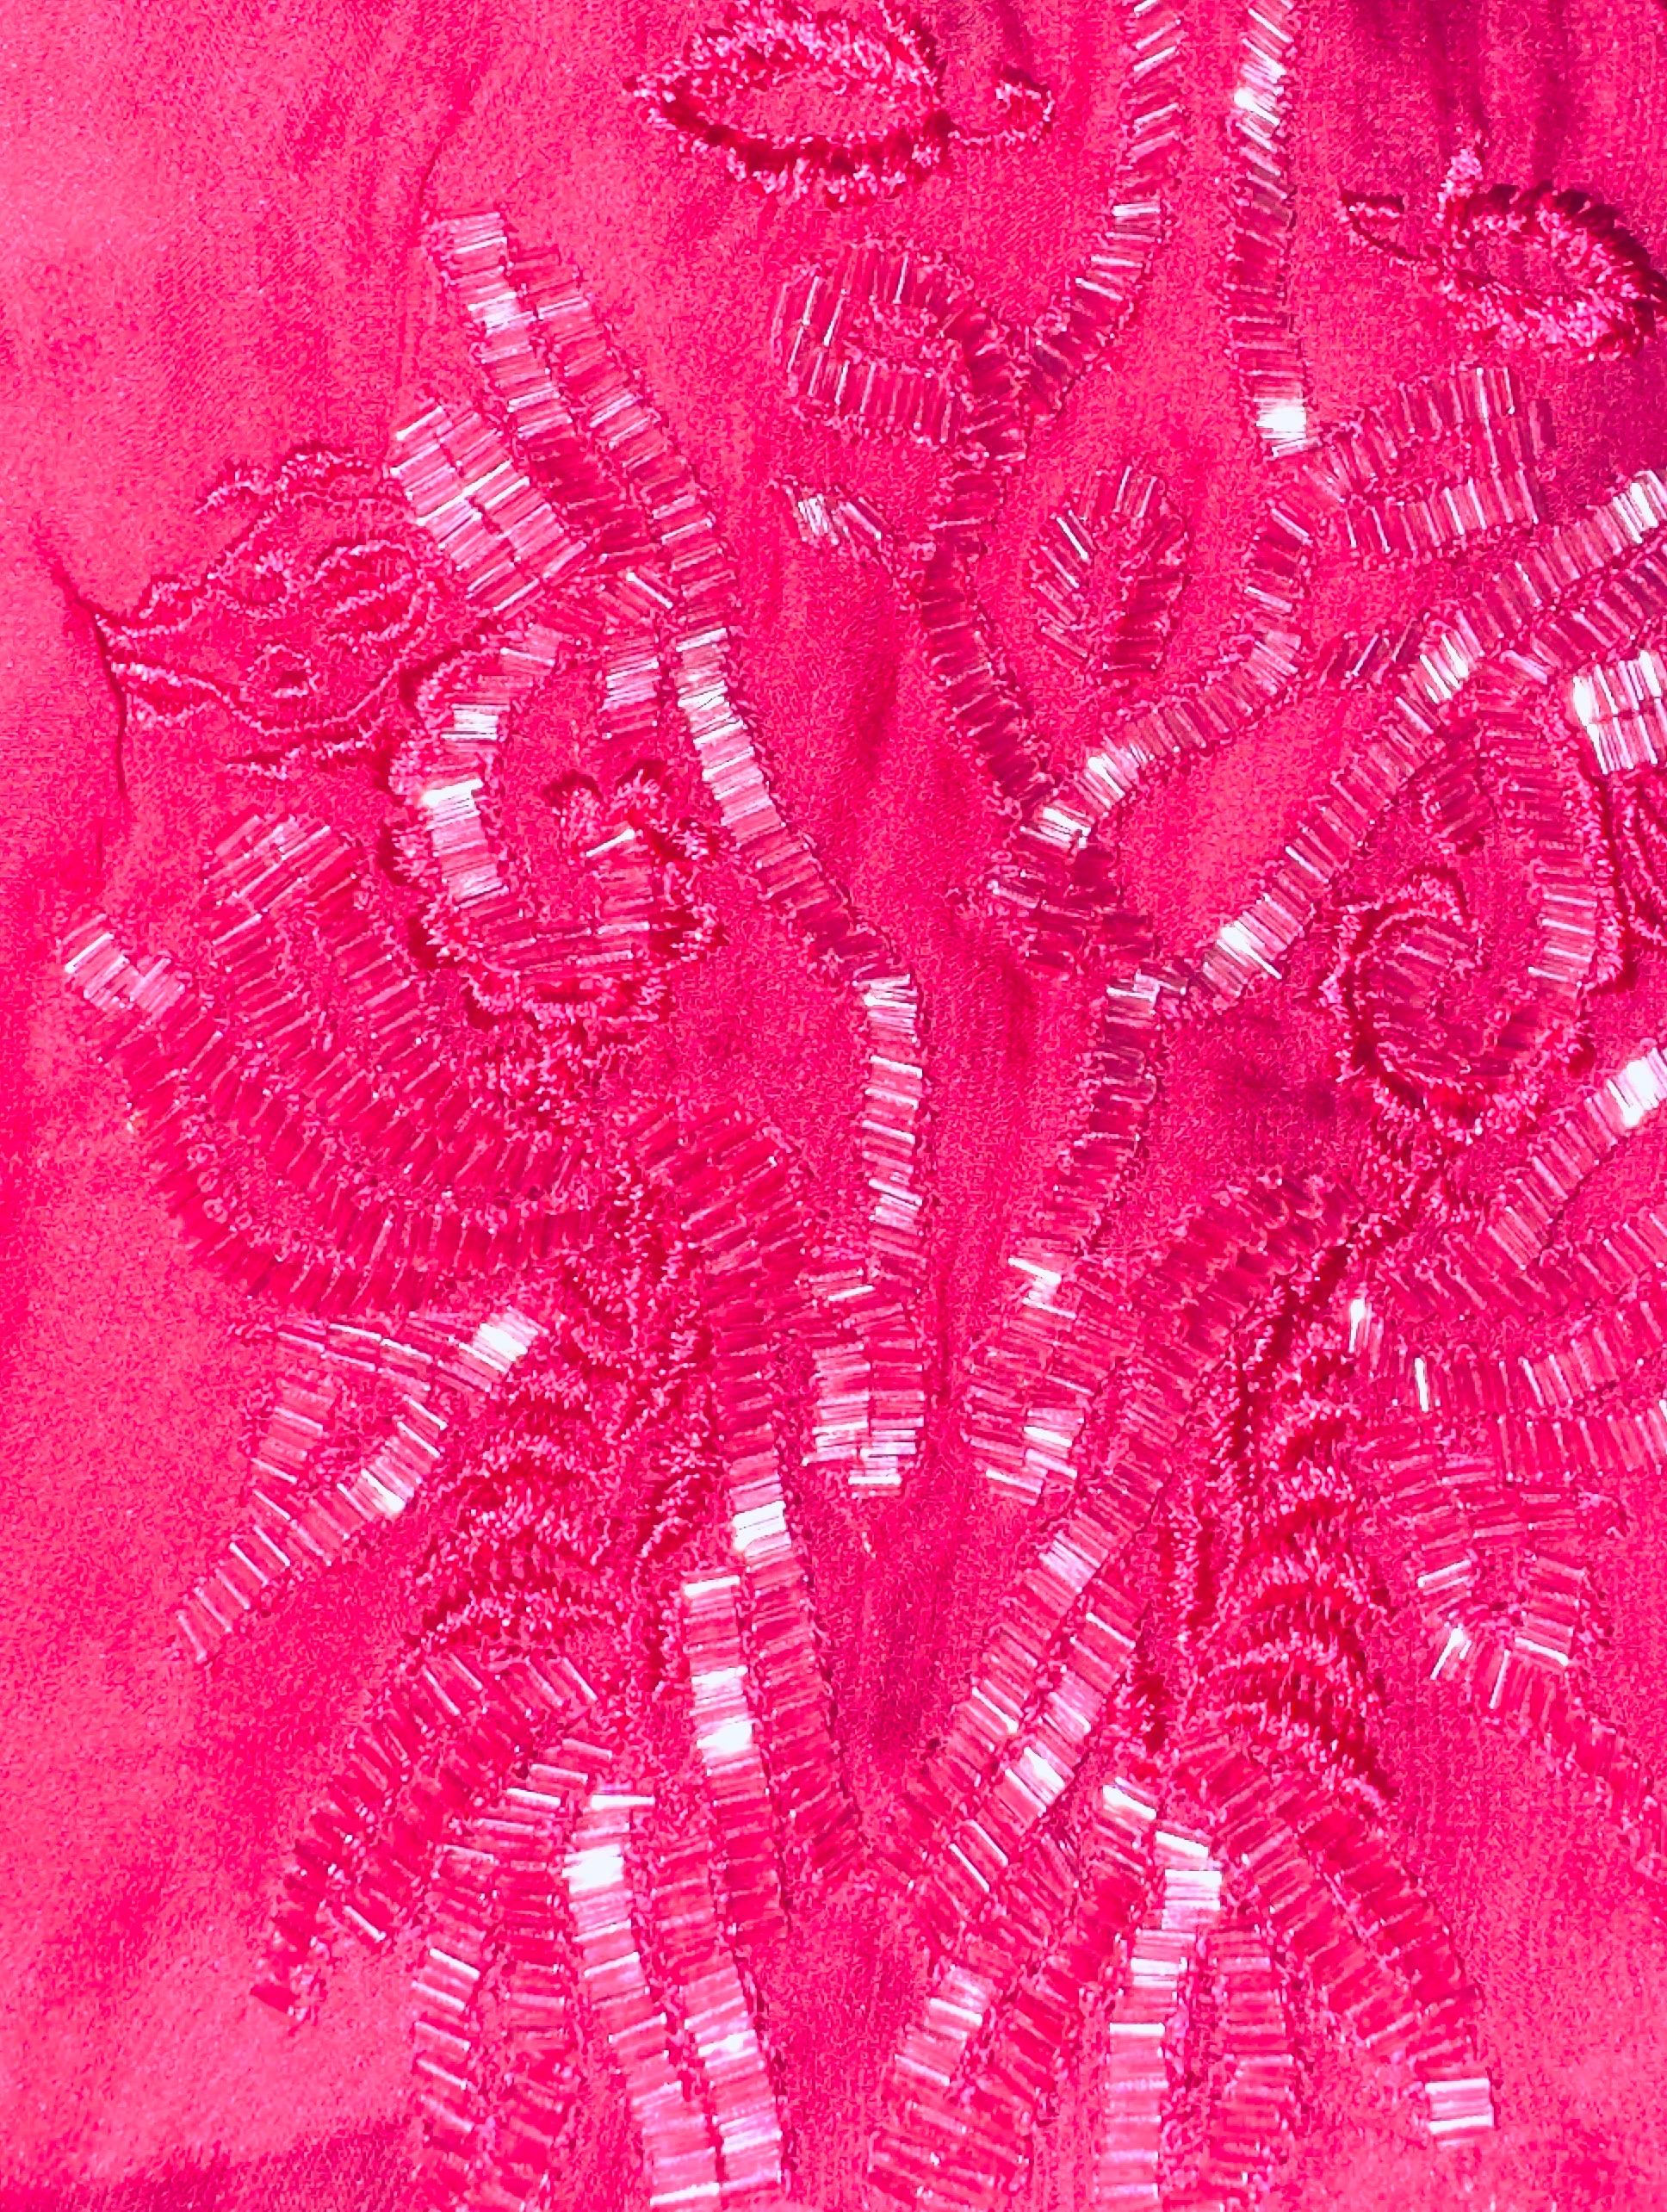 Exklusives Abend-Cocktailkleid von EMILIO PUCCI
Verziert mit handgestickten Ornamenten
Gefertigt aus luxuriöser Kady- und Chiffonseide
Erstaunliche rosa Farbe
Nur chemisch reinigen
Hergestellt in Italien
Einzelhandelspreis 5199$ plus